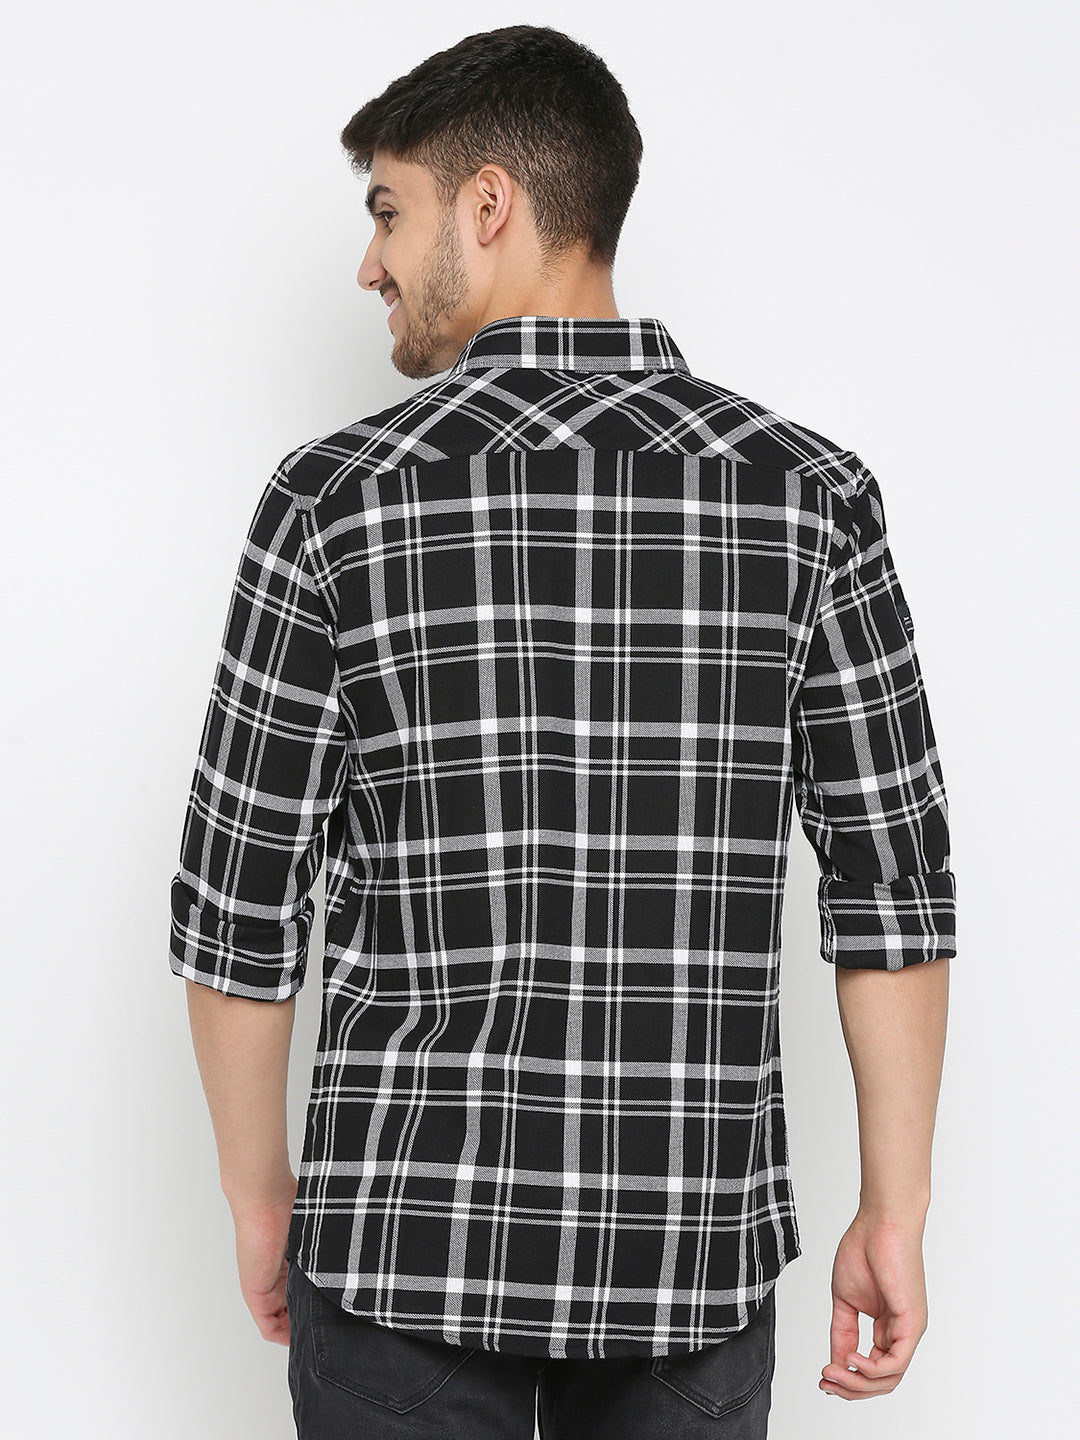 Spykar Black Cotton Full Sleeve Checkered Shirt For Men